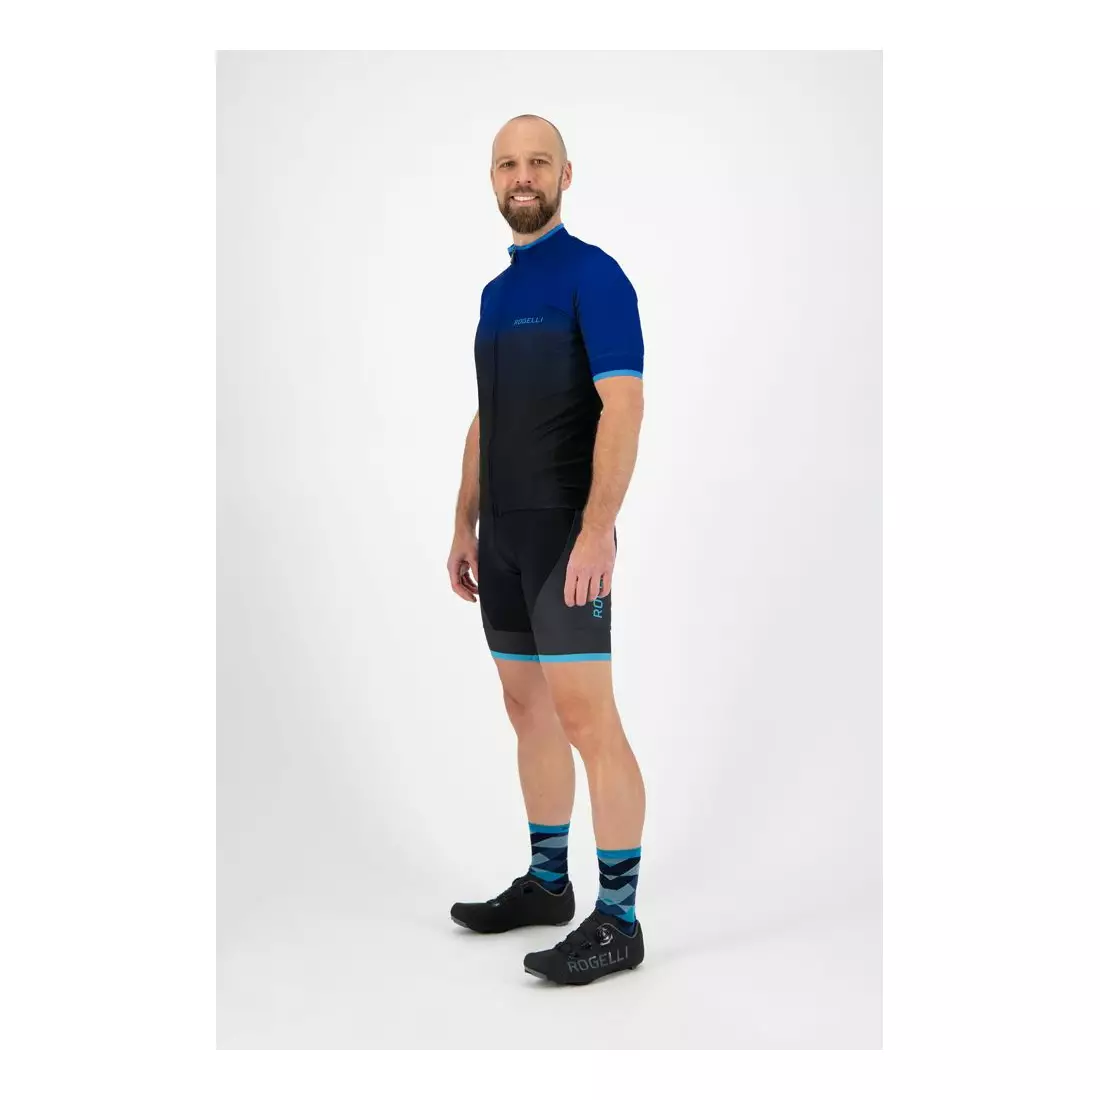 ROGELLI Herren Fahrrad T-Shirt HORIZON black/blue 001.415